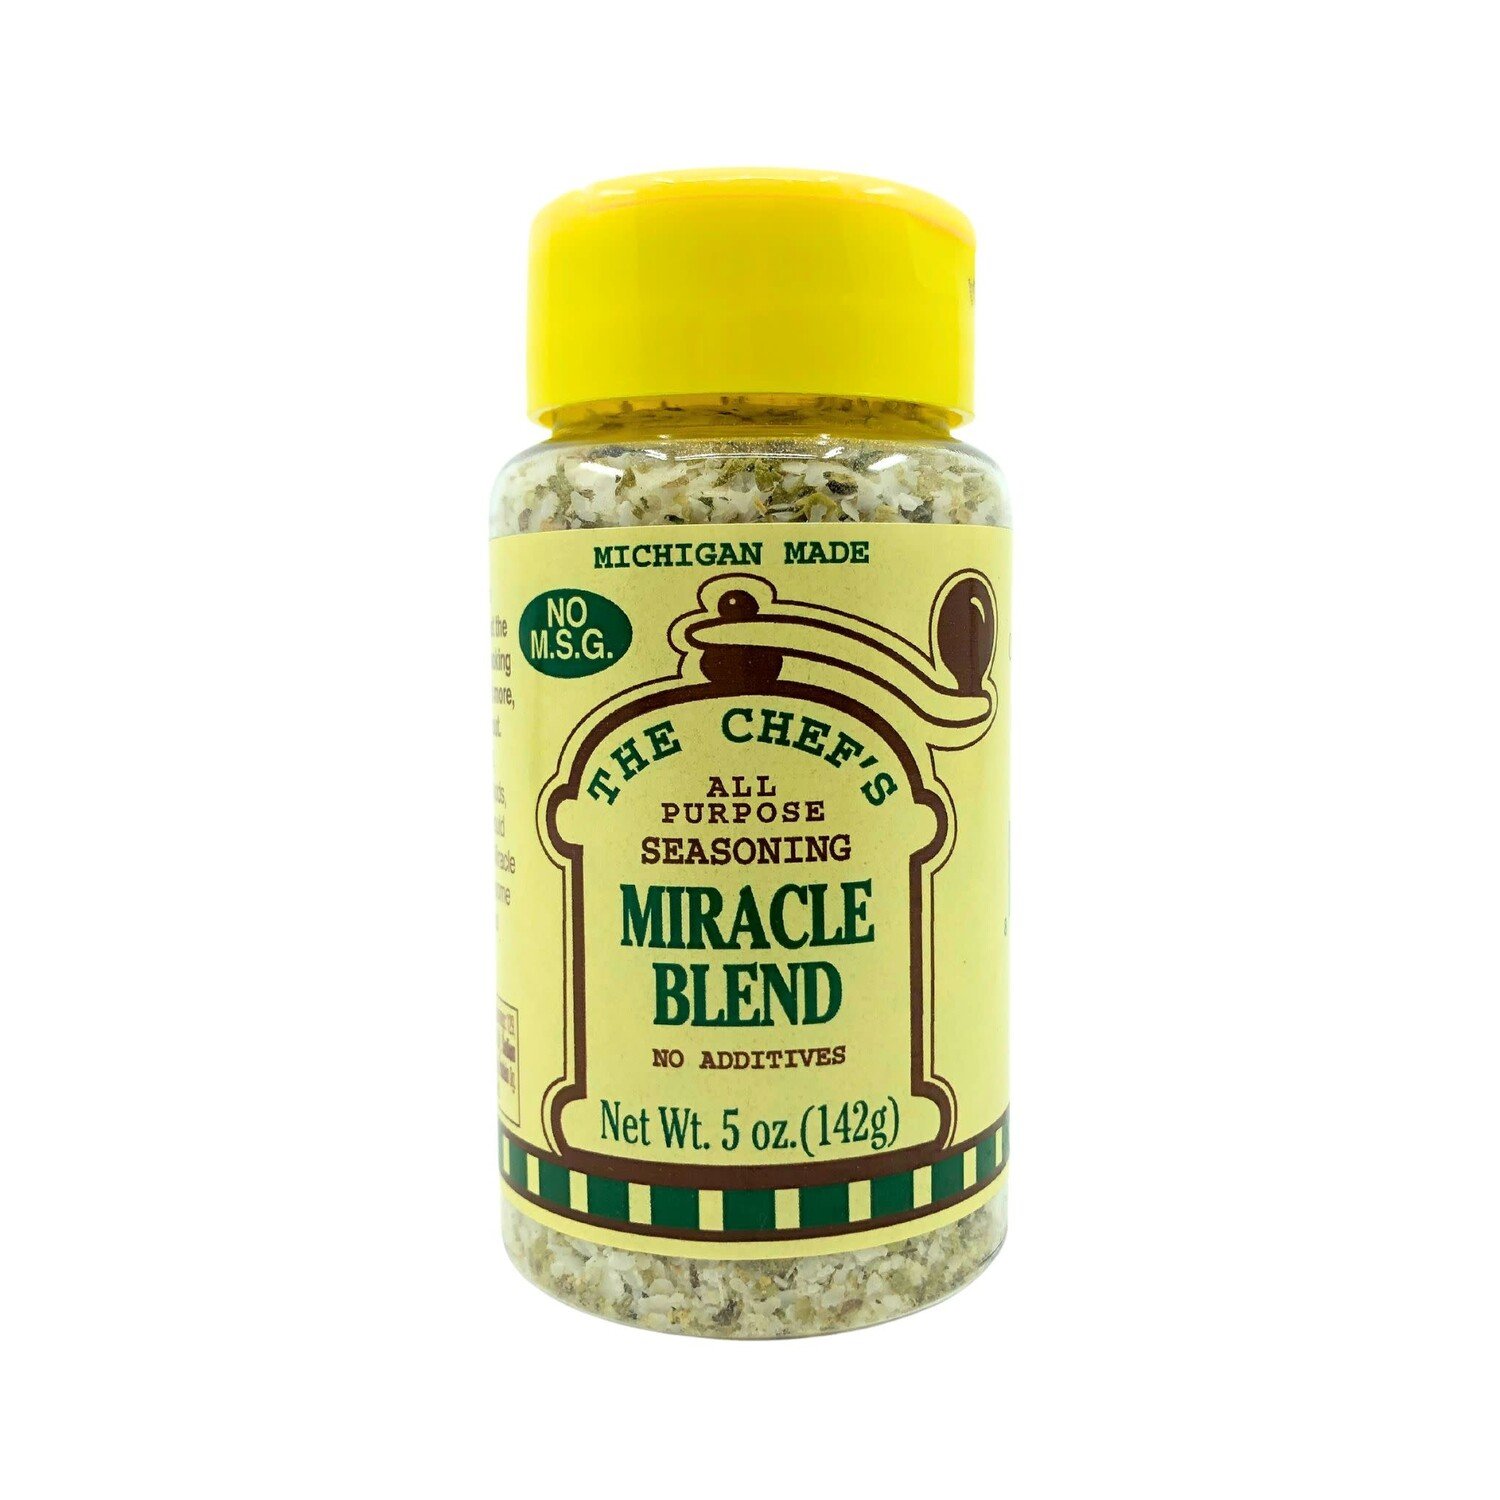 https://cdn.shoplightspeed.com/shops/618750/files/54728033/1500x1500x2/alden-mill-house-miracle-blend-spices-5-oz.jpg